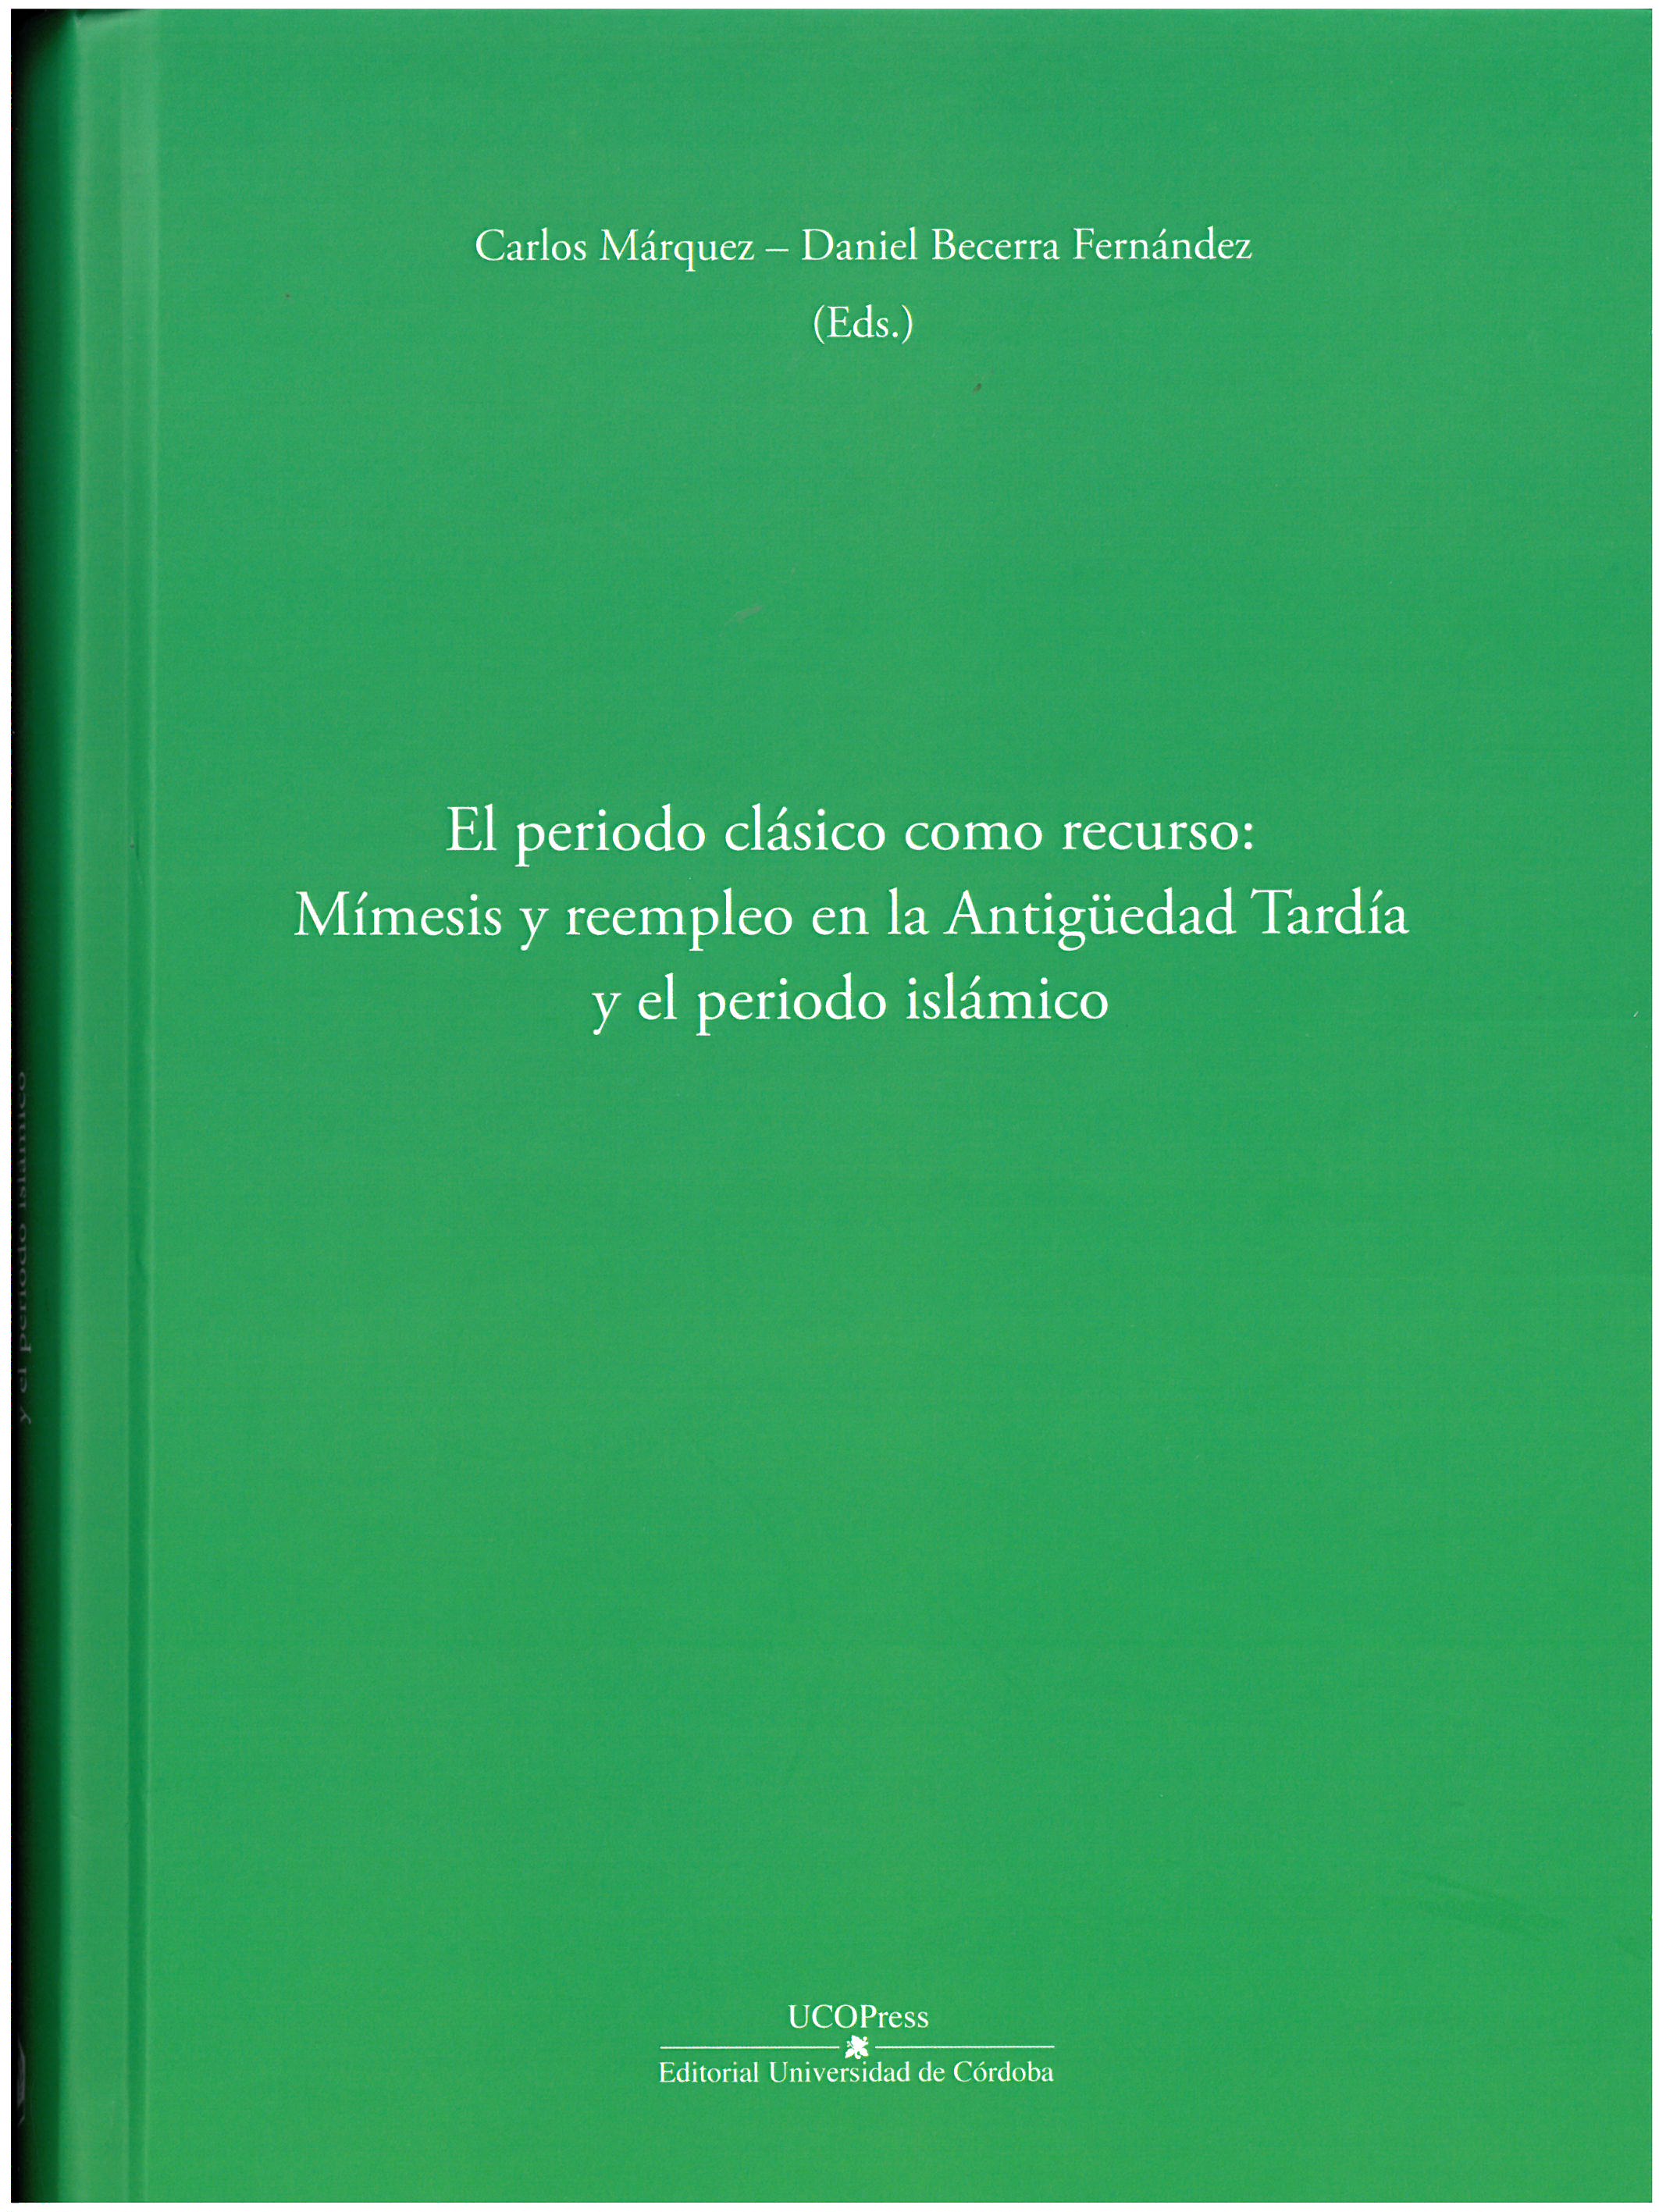 Imagen de portada del libro El periodo clásico como recurso